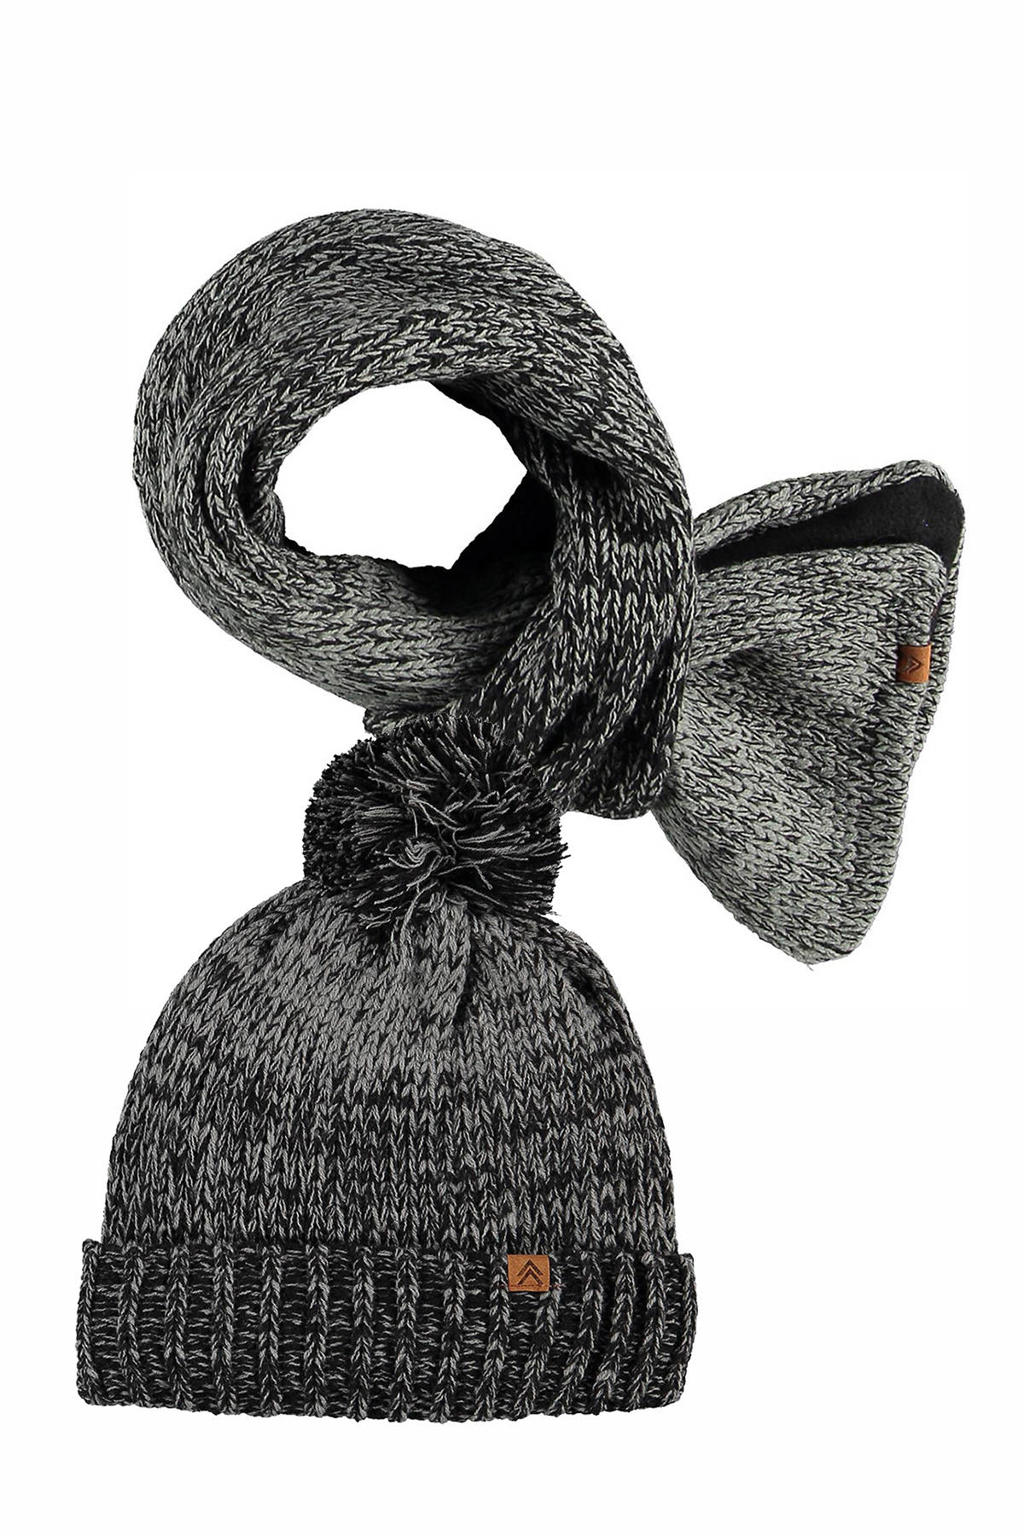 Sarlini gemeleerde muts + sjaal zwart/antraciet